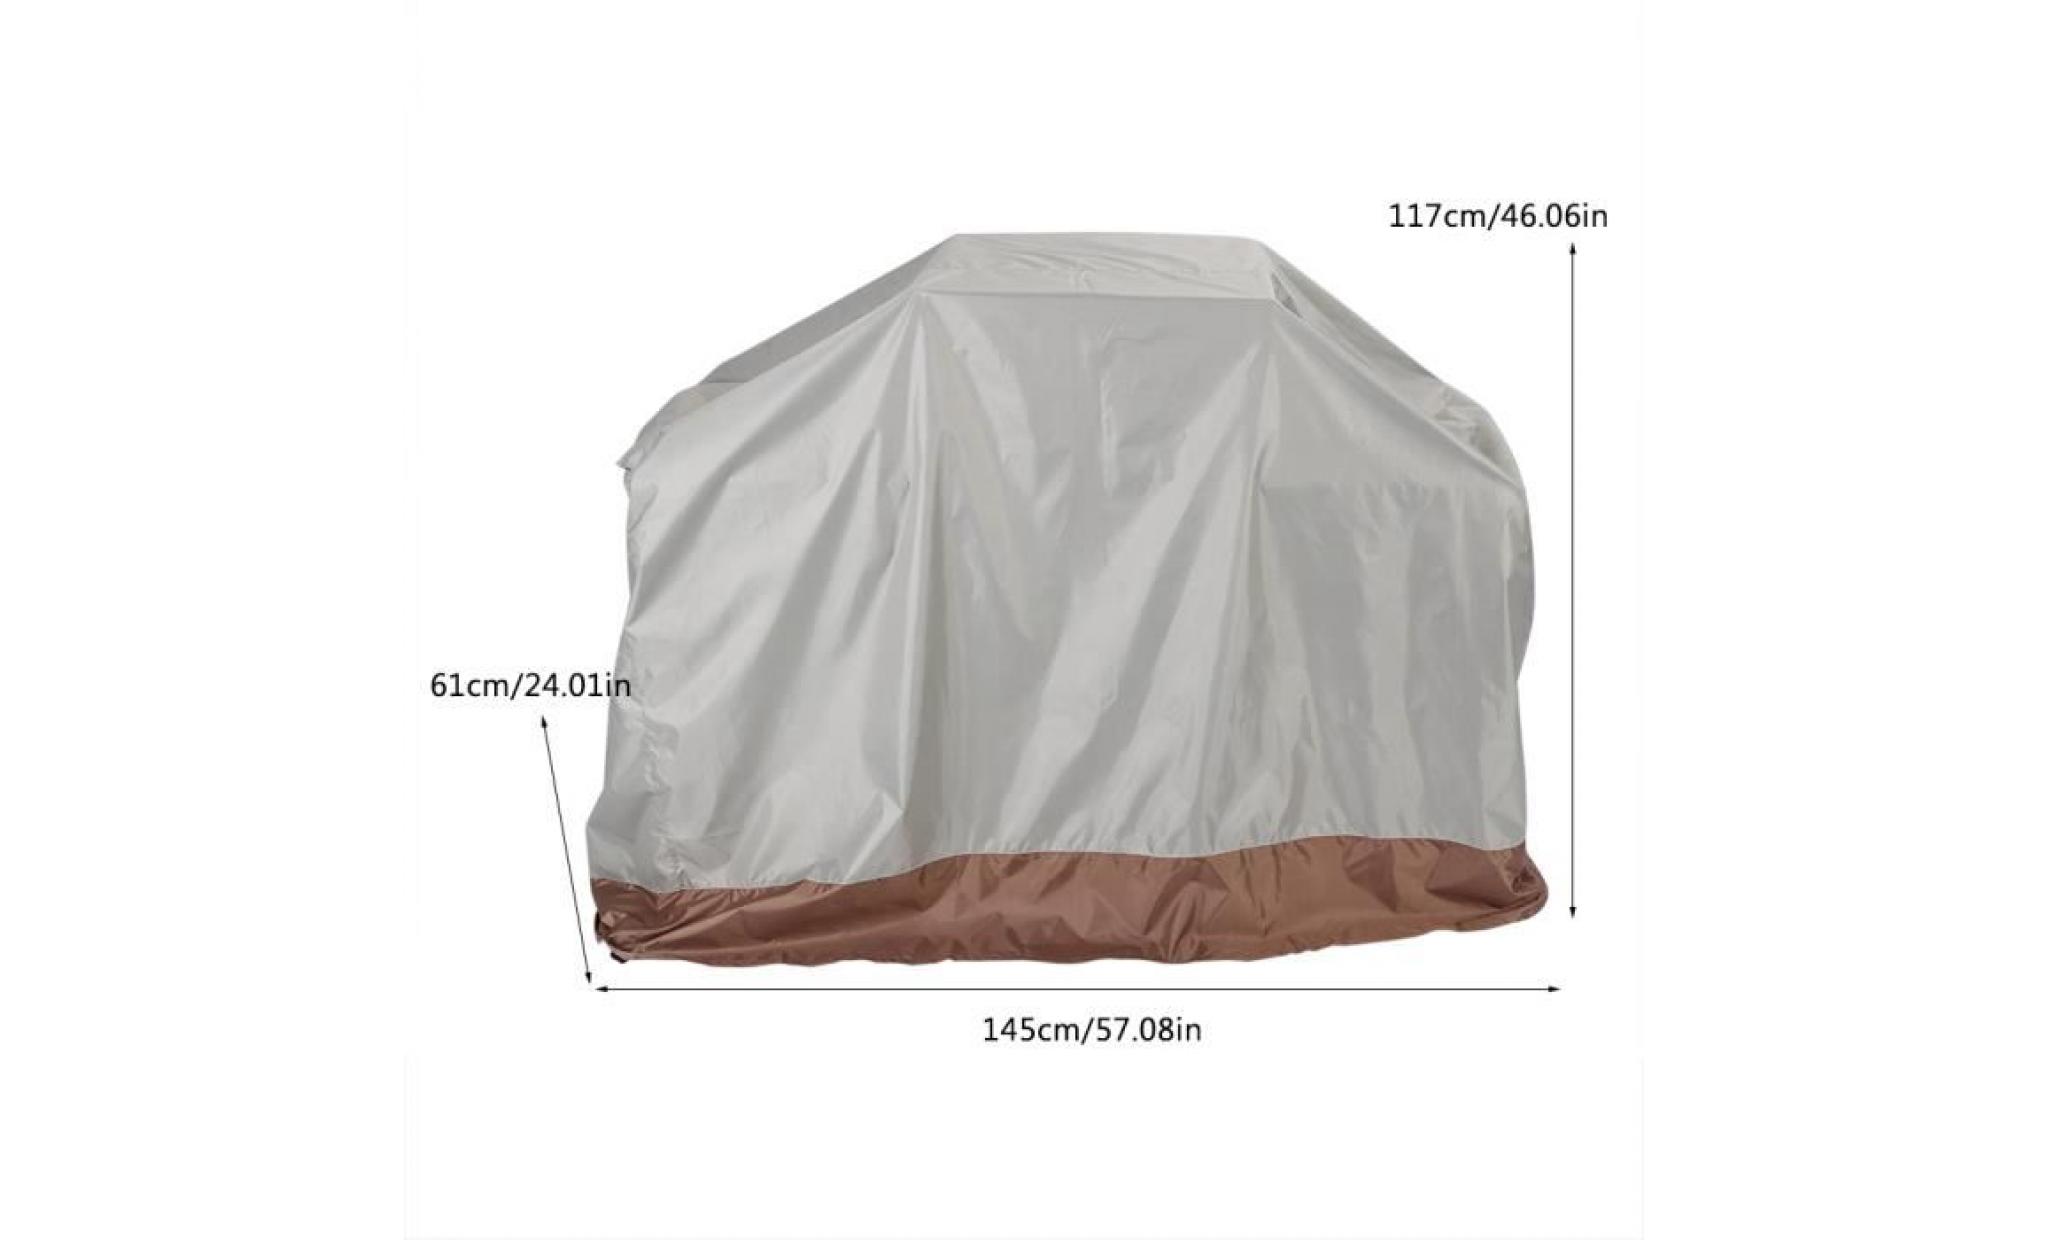 couverture de gril de barbecue en tissu d'oxford 210d extérieur imperméable 145 * 61 * 117cm   ohl pas cher